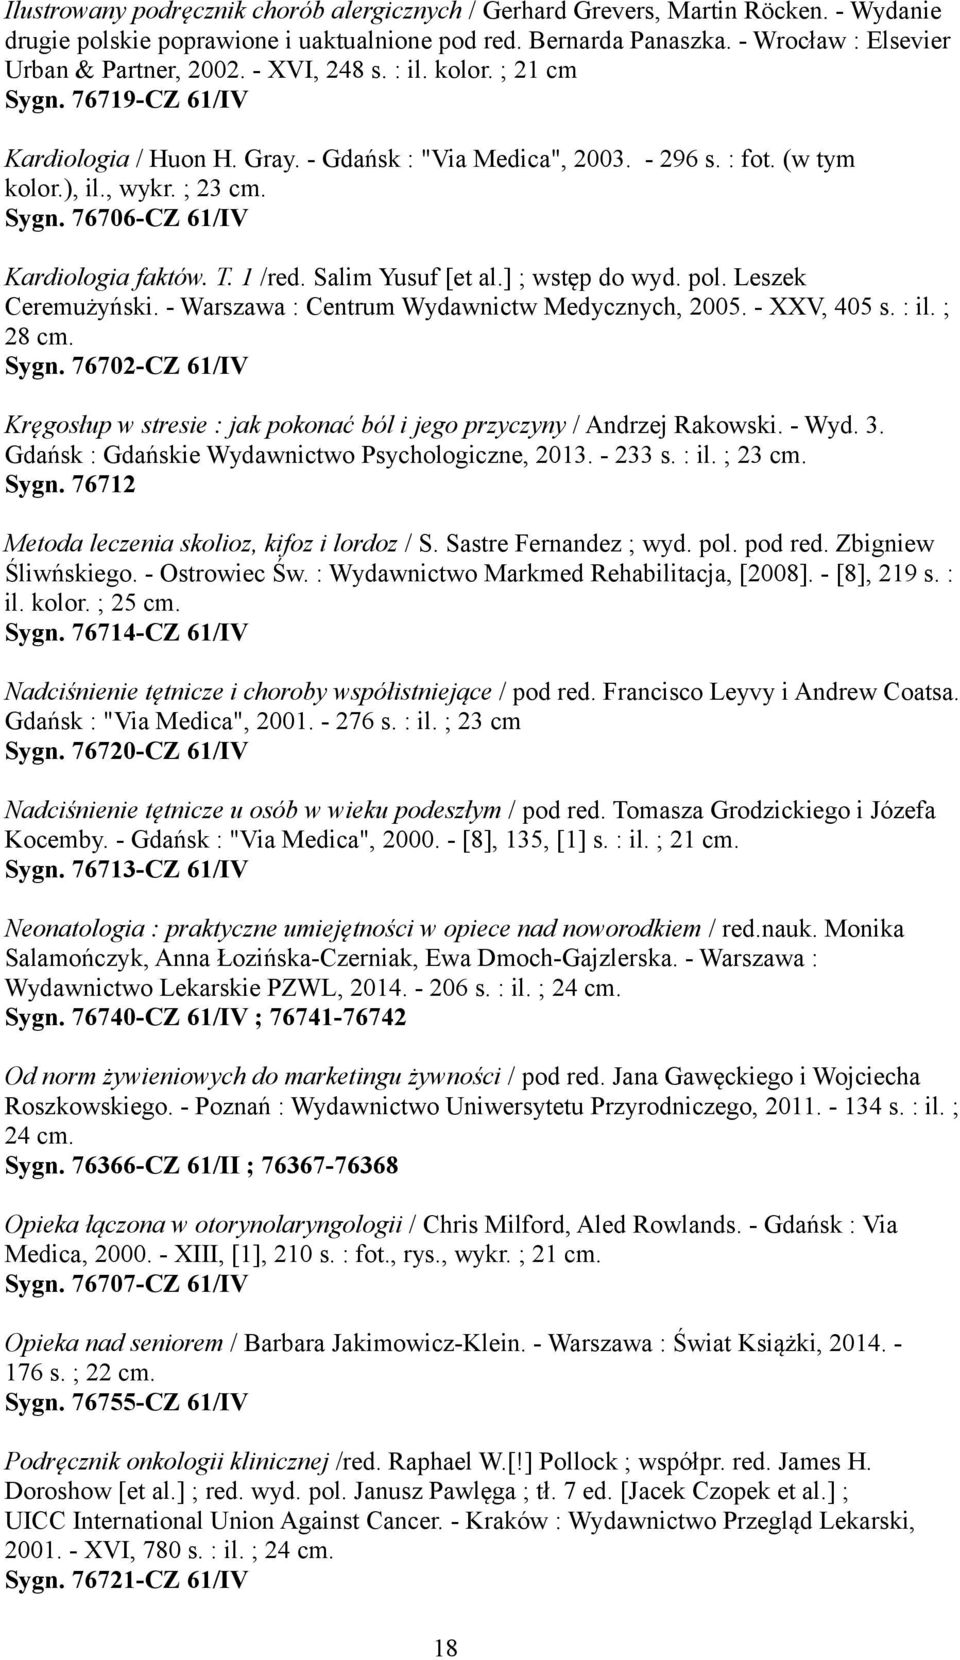 T. 1 /red. Salim Yusuf [et al.] ; wstęp do wyd. pol. Leszek Ceremużyński. - Warszawa : Centrum Wydawnictw Medycznych, 2005. - XXV, 405 s. : il. ; 28 cm. Sygn.